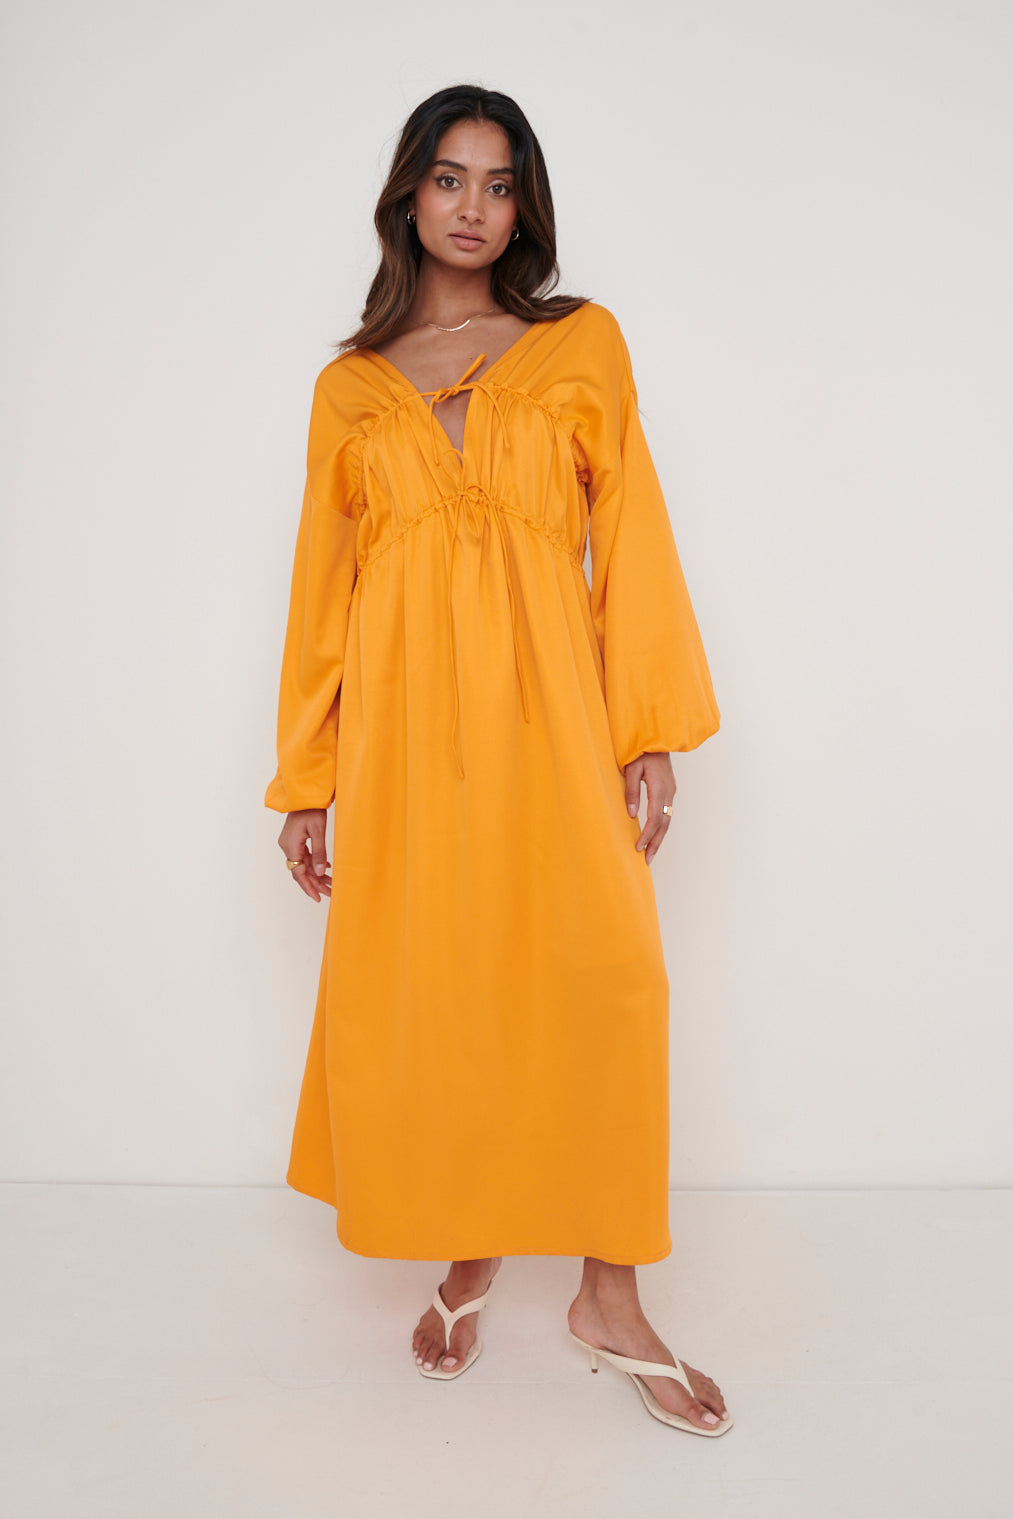 Ottilie Tie Midaxi Dress - Tangerine, 12